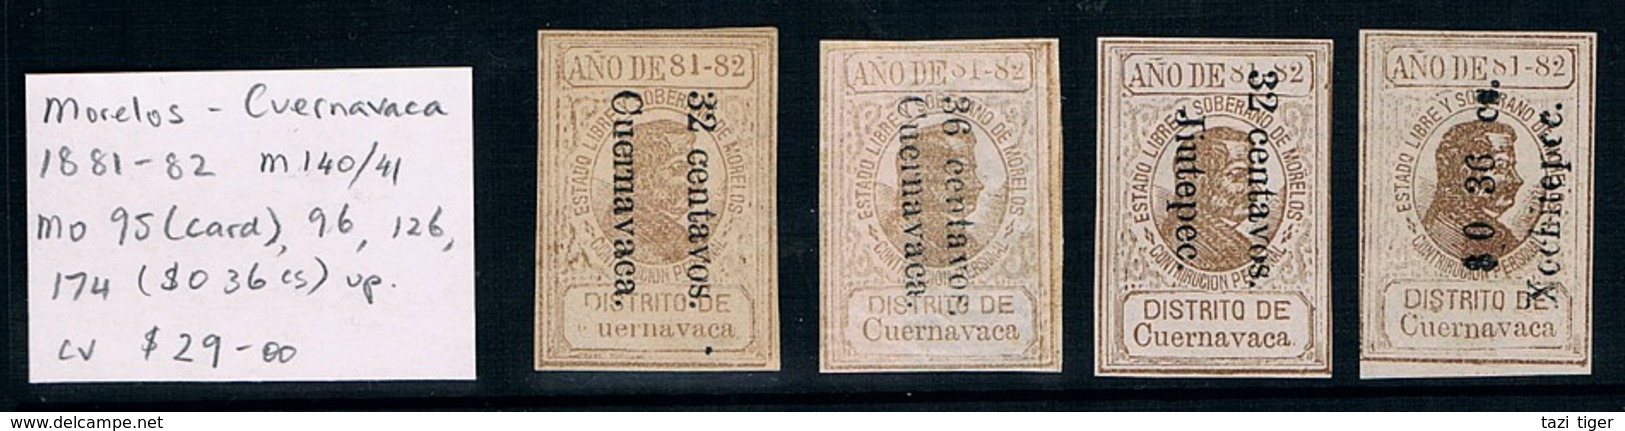 MEXICO • 1881-2 • Morelos - District Of Cuernavaca State Revenues • M 140/41, MO 95, 96, 126, 174 (4) - Mexico